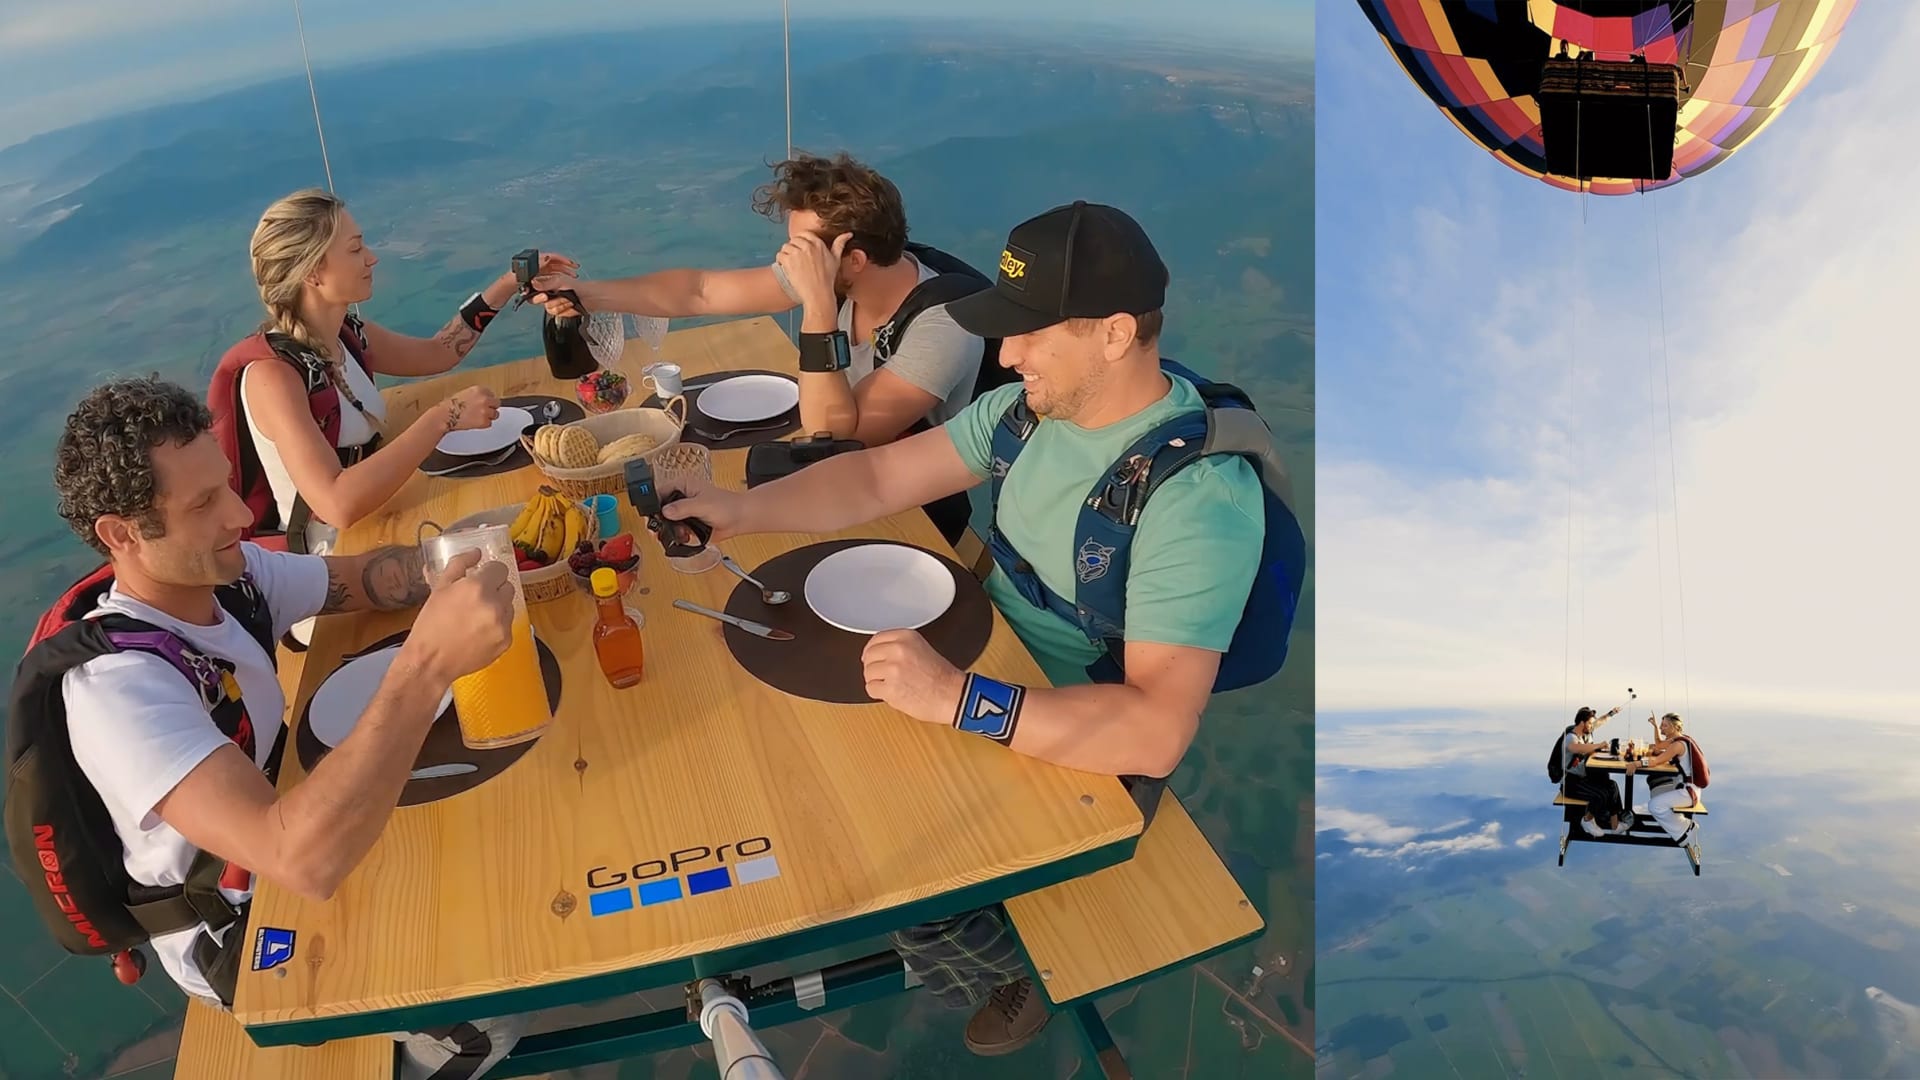 على طاولة معلقة في سماء البرازيل.. شاهد كيف يتناول 4 أشخاص وجبة فطورهم